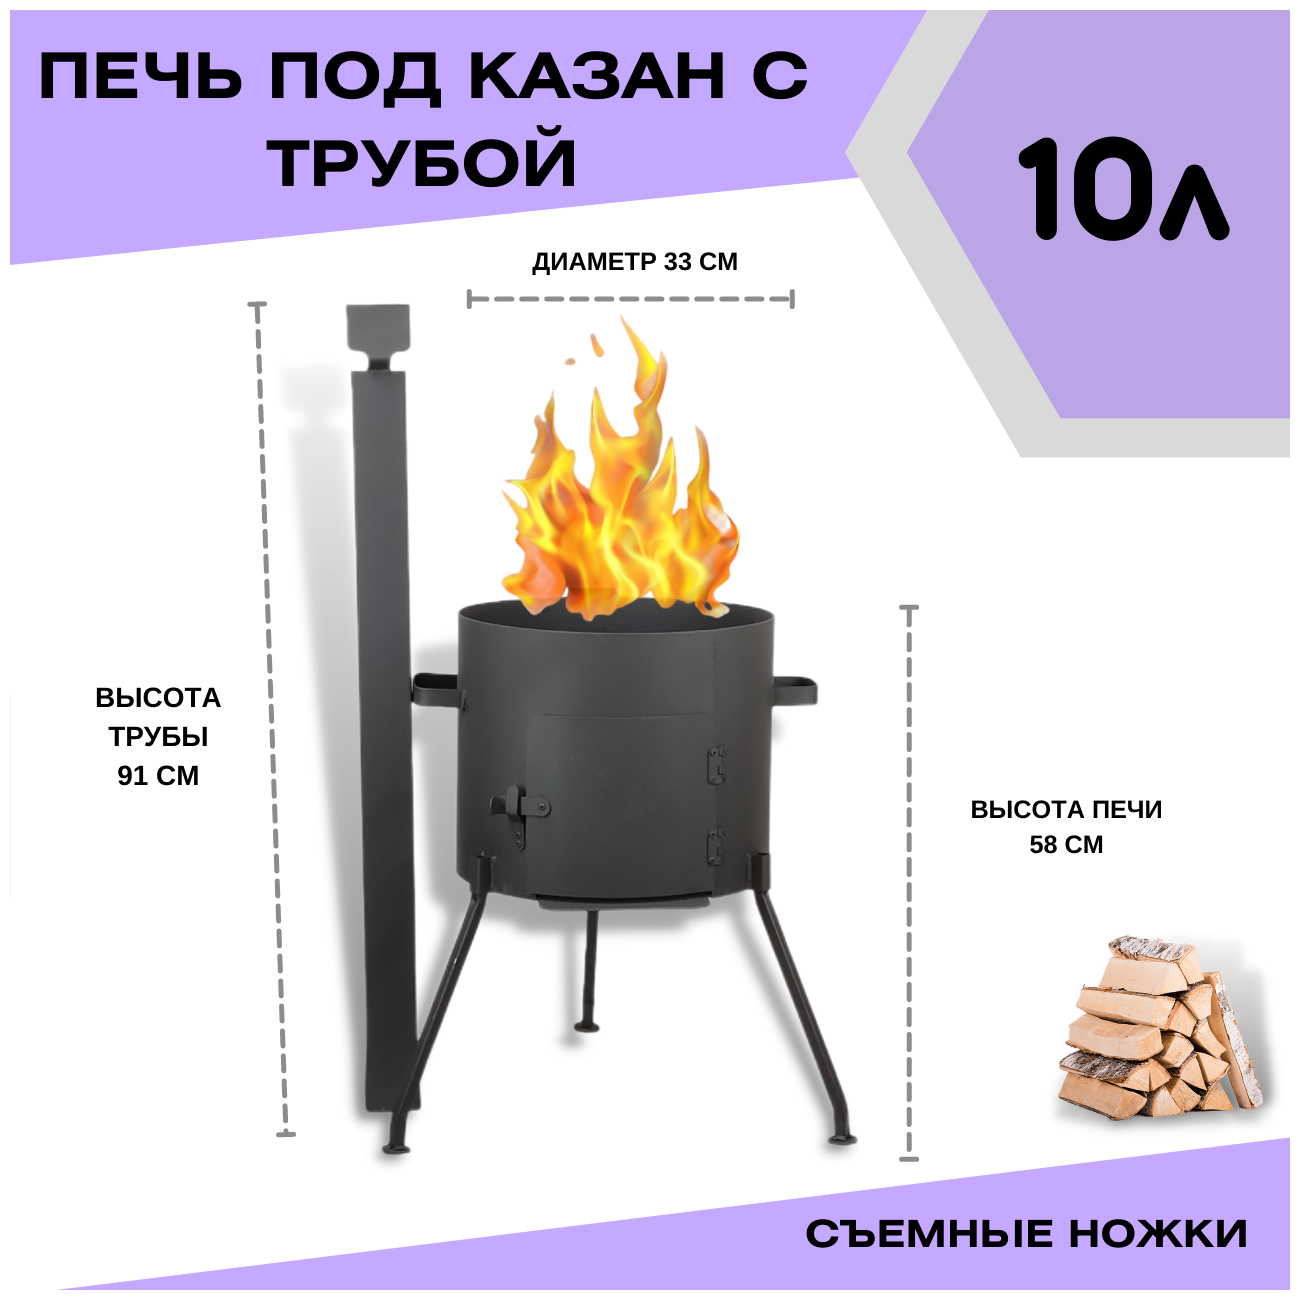 Печка под казан 10 литров с трубой - с дымоходом и заслонкой (съемными ножками) Svargan